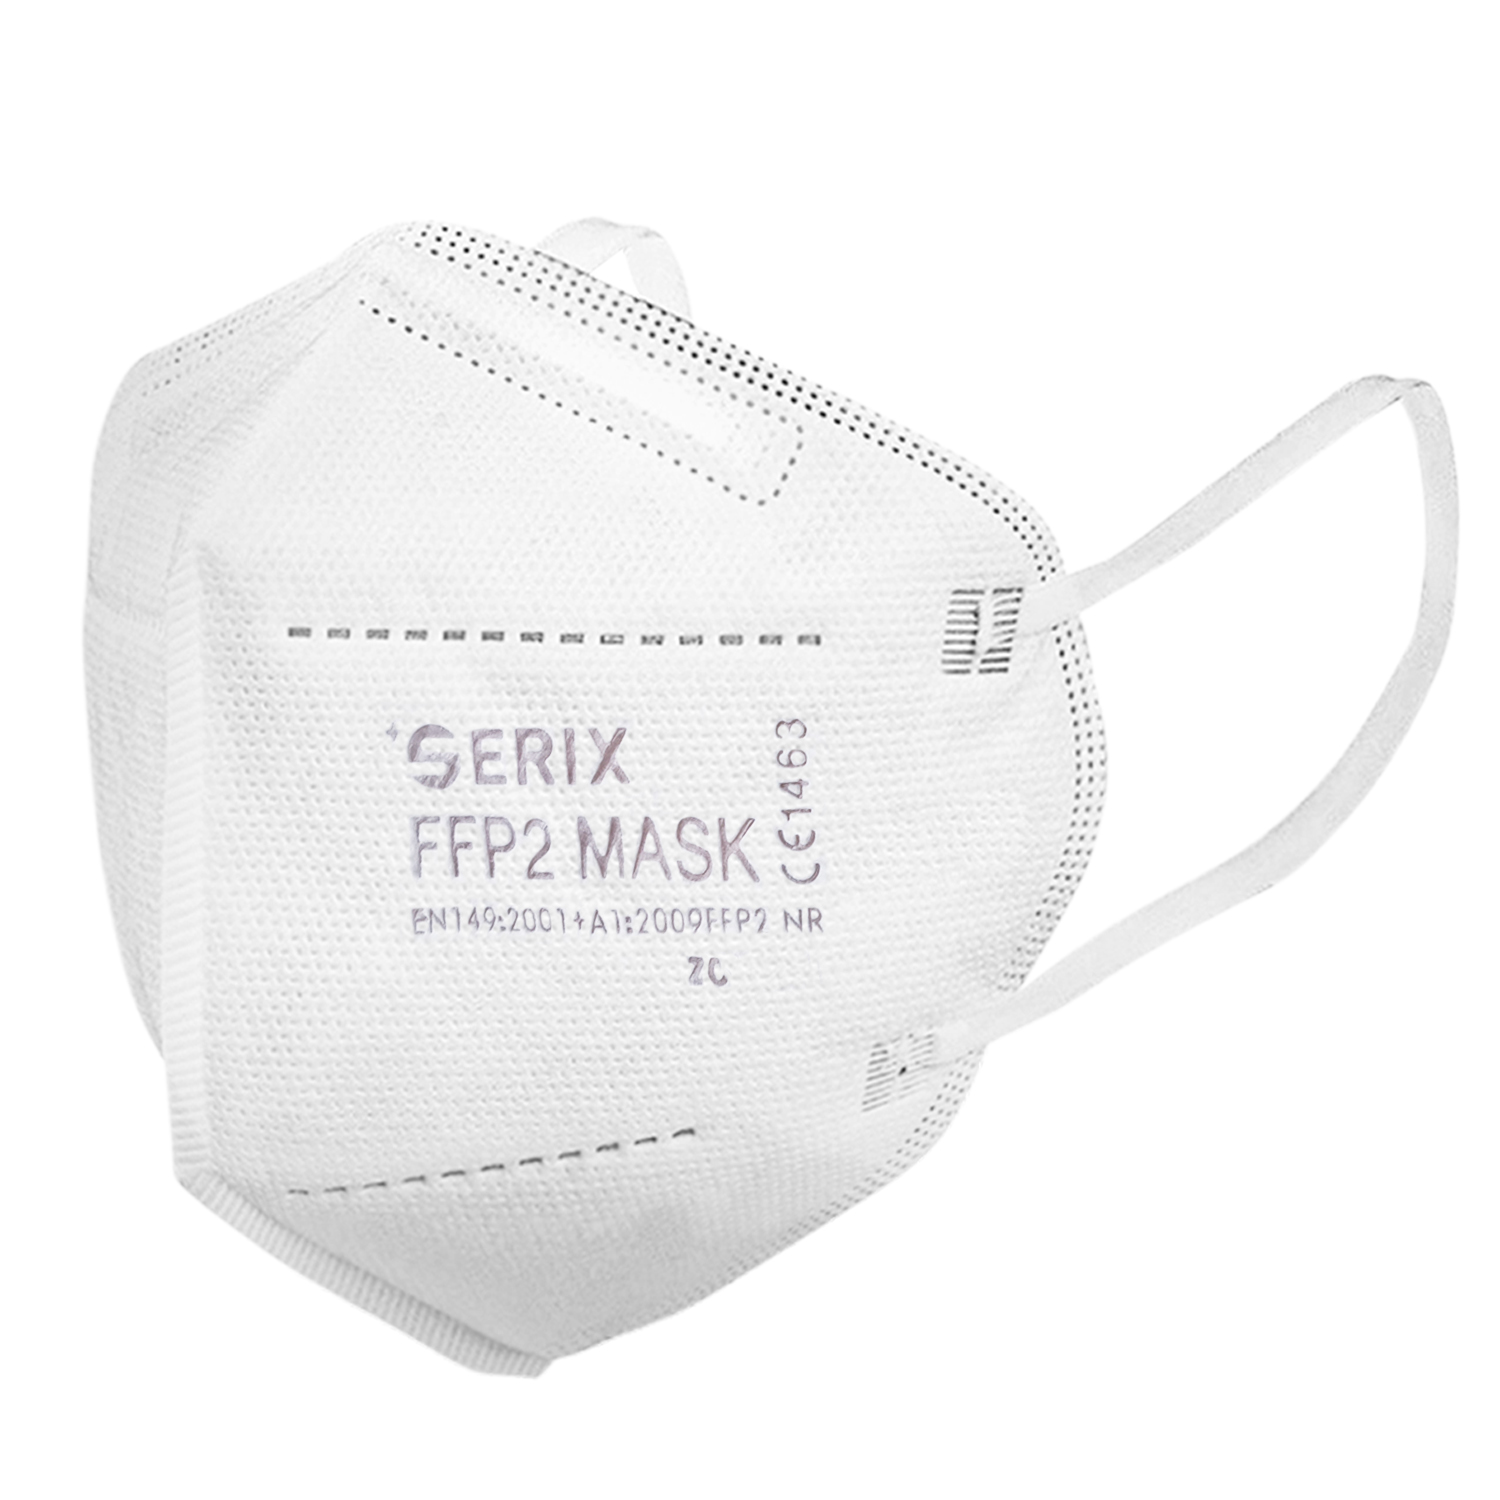 Serix FFP2 weiß - Schutzmaske